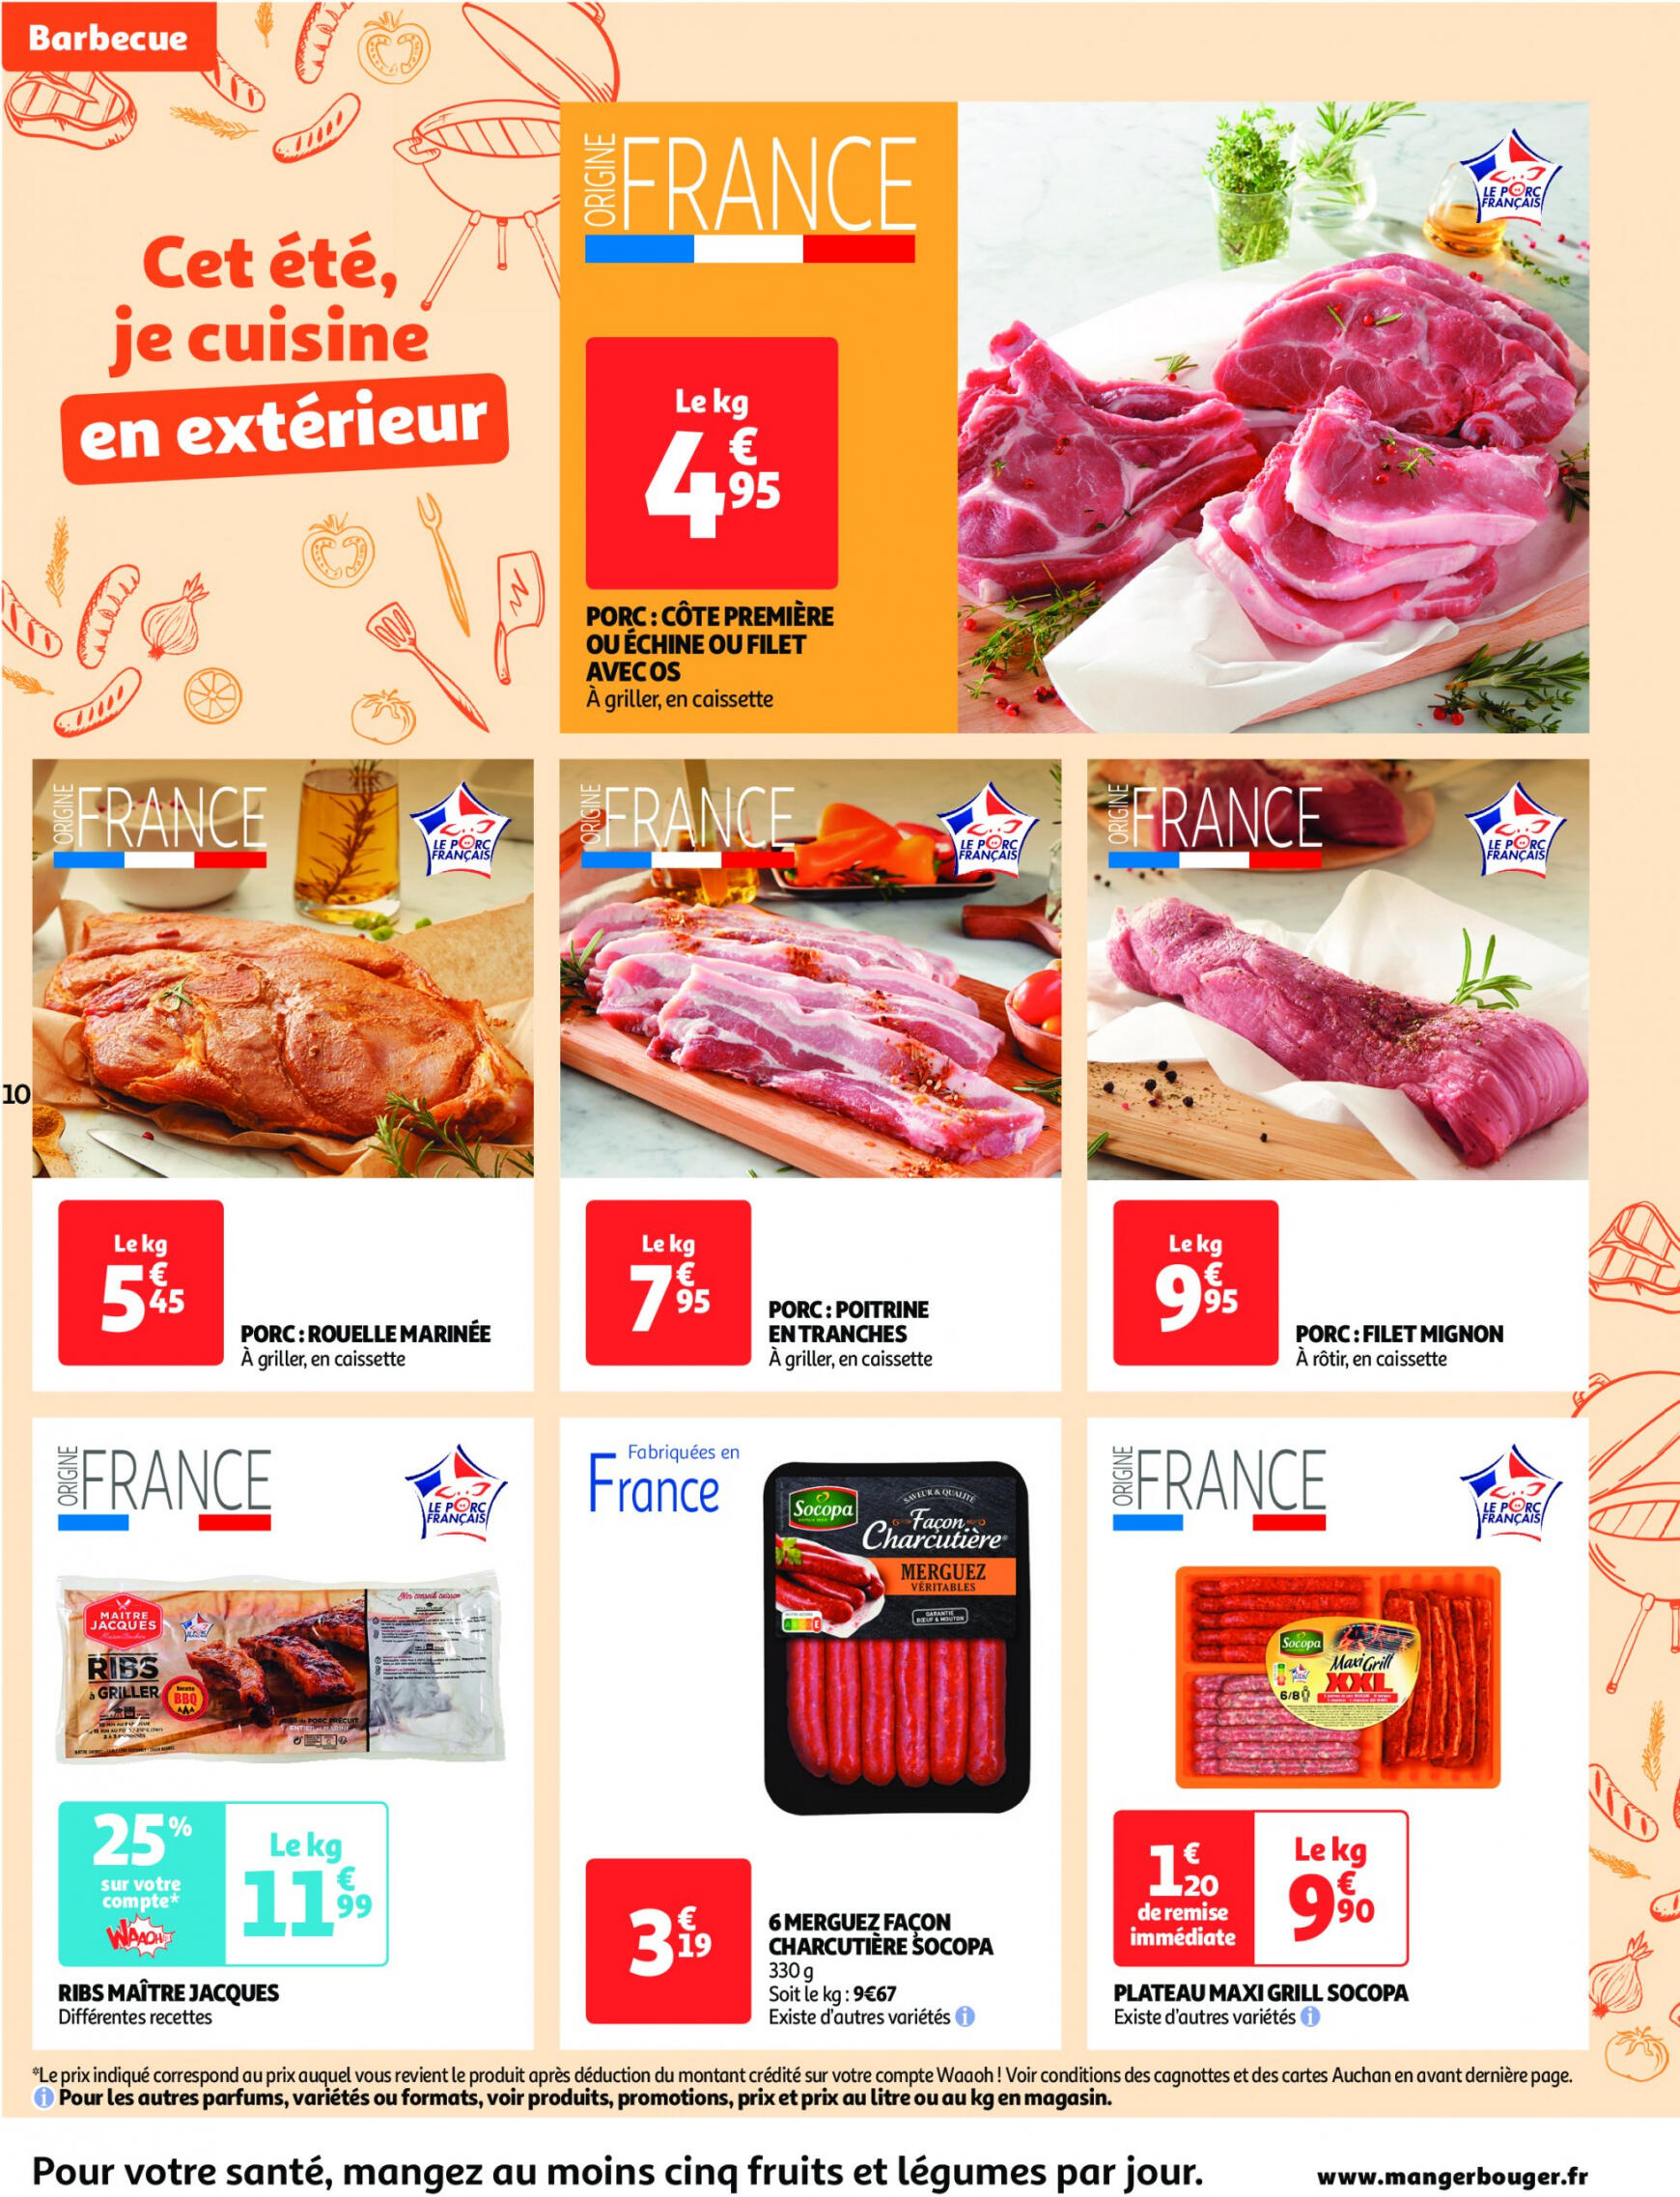 auchan - Auchan supermarché - Faites le plein de bonnes affaires folder huidig 22.05. - 26.05. - page: 10